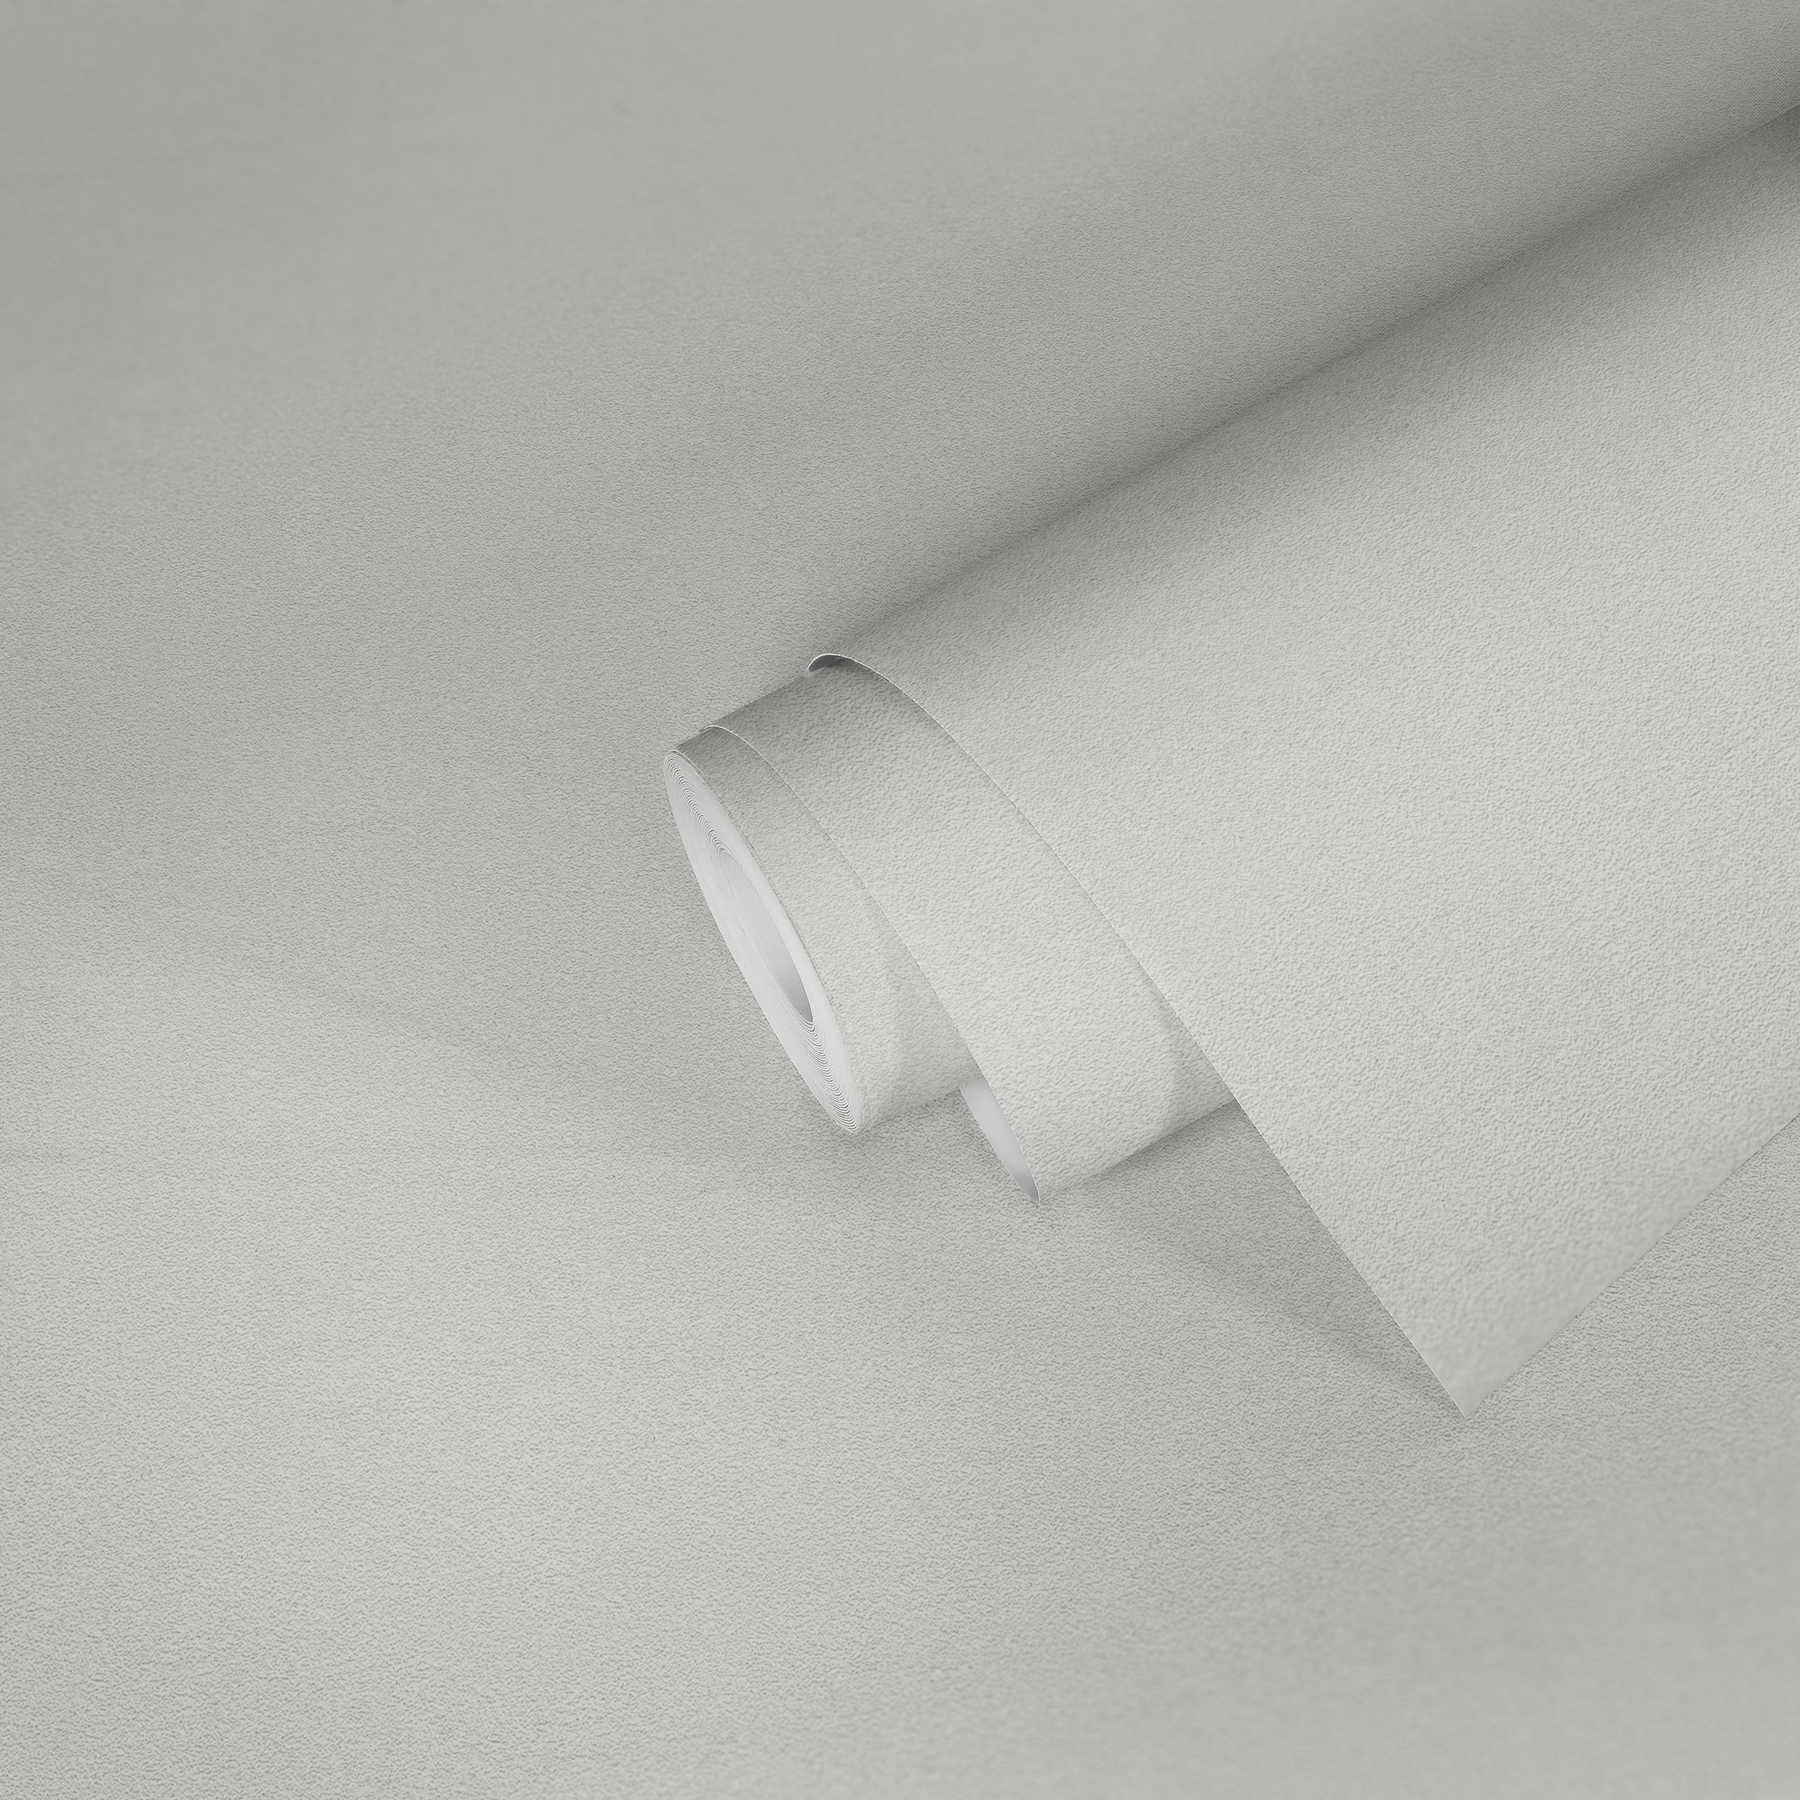             Papier peint uni avec structure de surface & effet scintillant - blanc
        